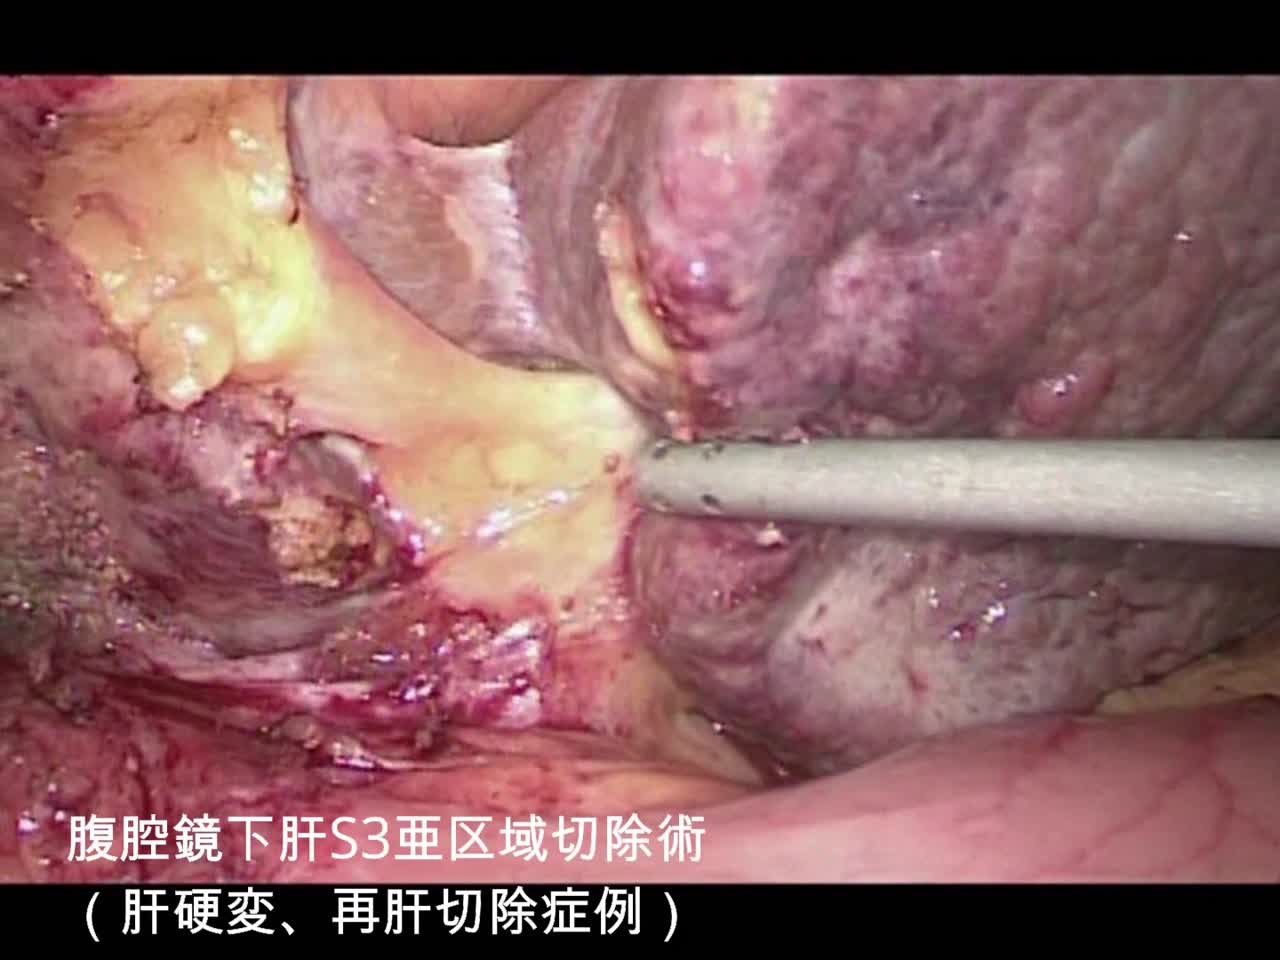 動画3 腹腔鏡下肝S3亜区域切除術